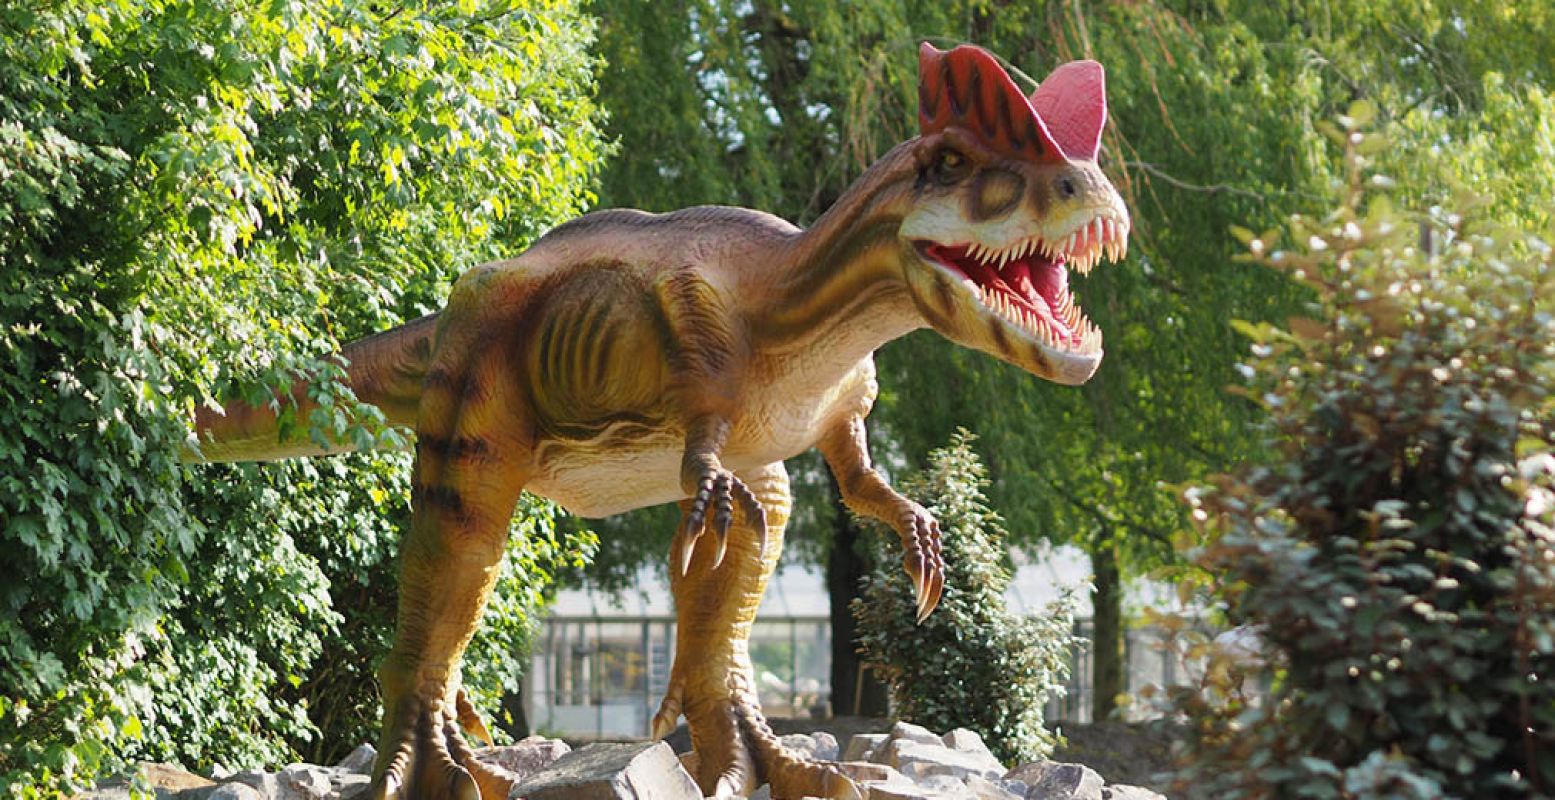 Bekijk allerlei dinosauriërs in Dinoland Zwolle, zoals deze Dilophosaurus.